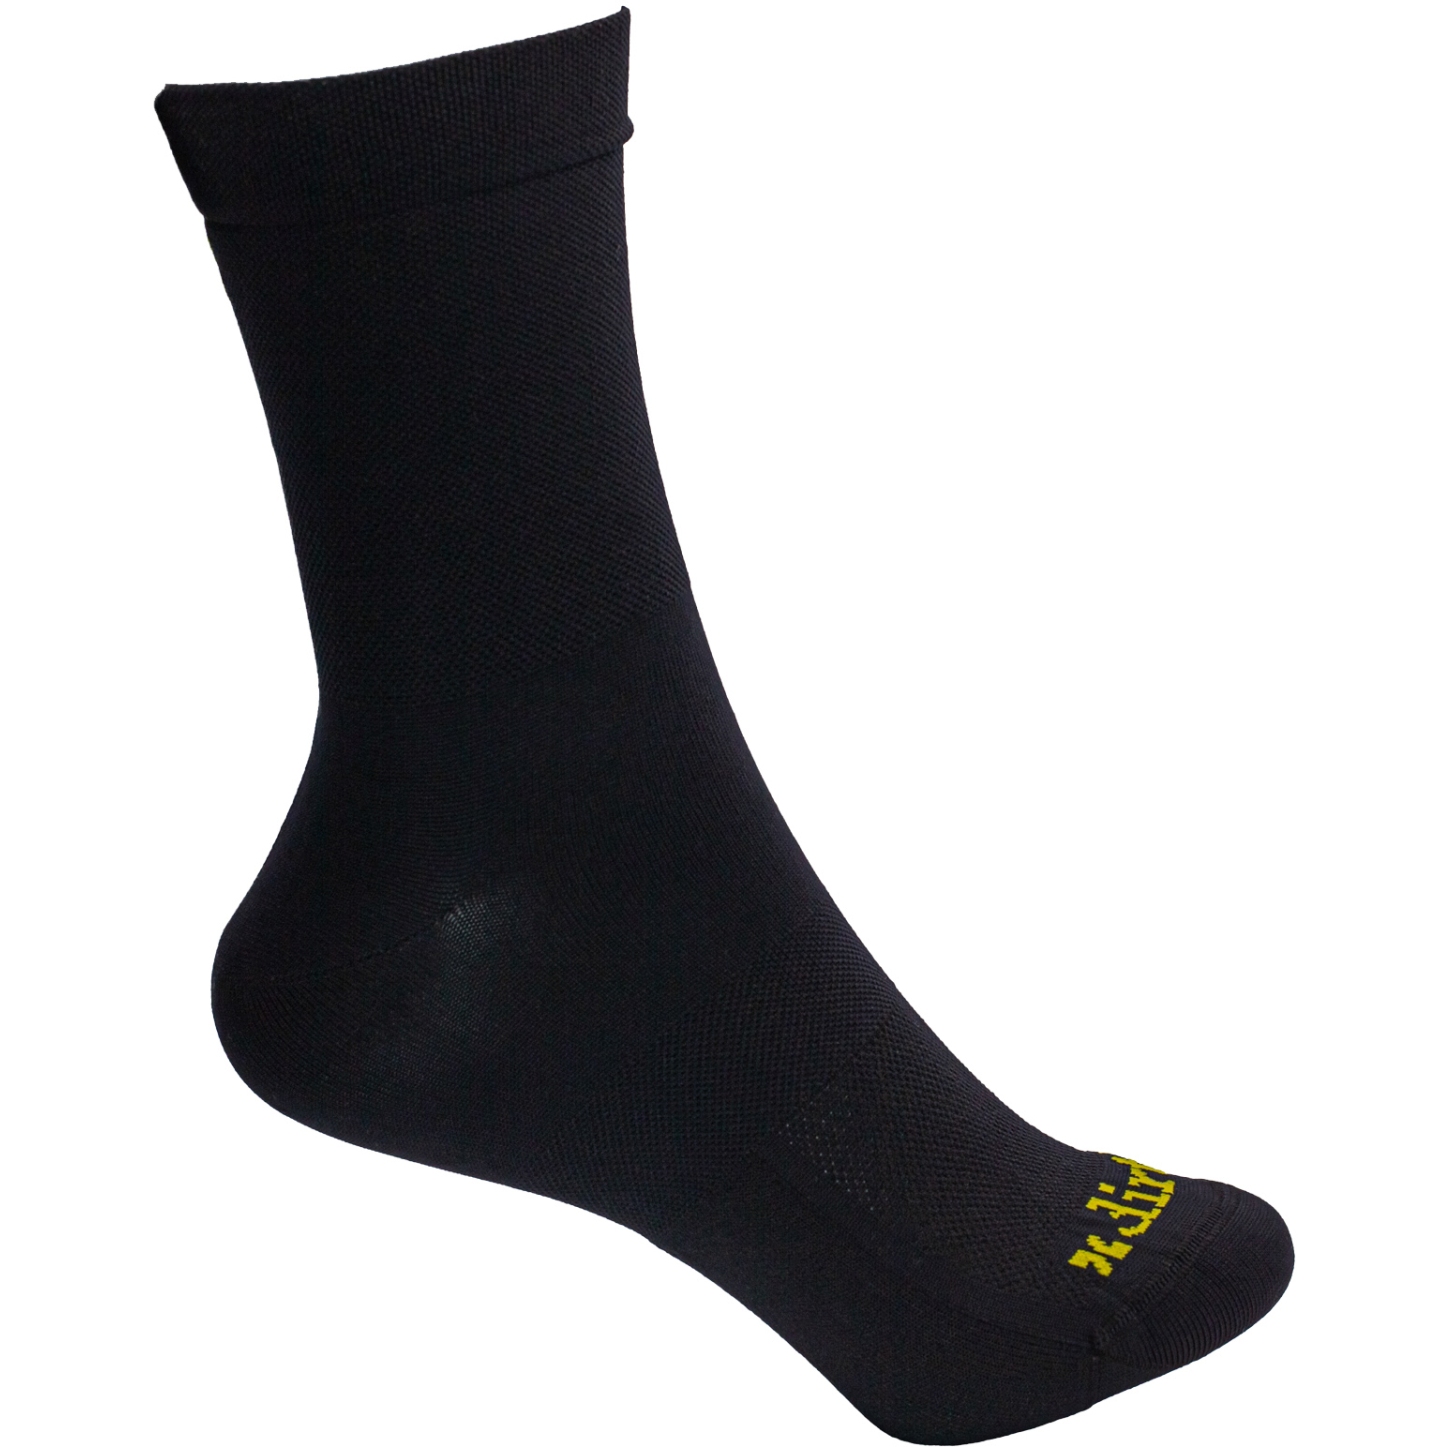 Productfoto van Dirtlej Tech20 Socks - black